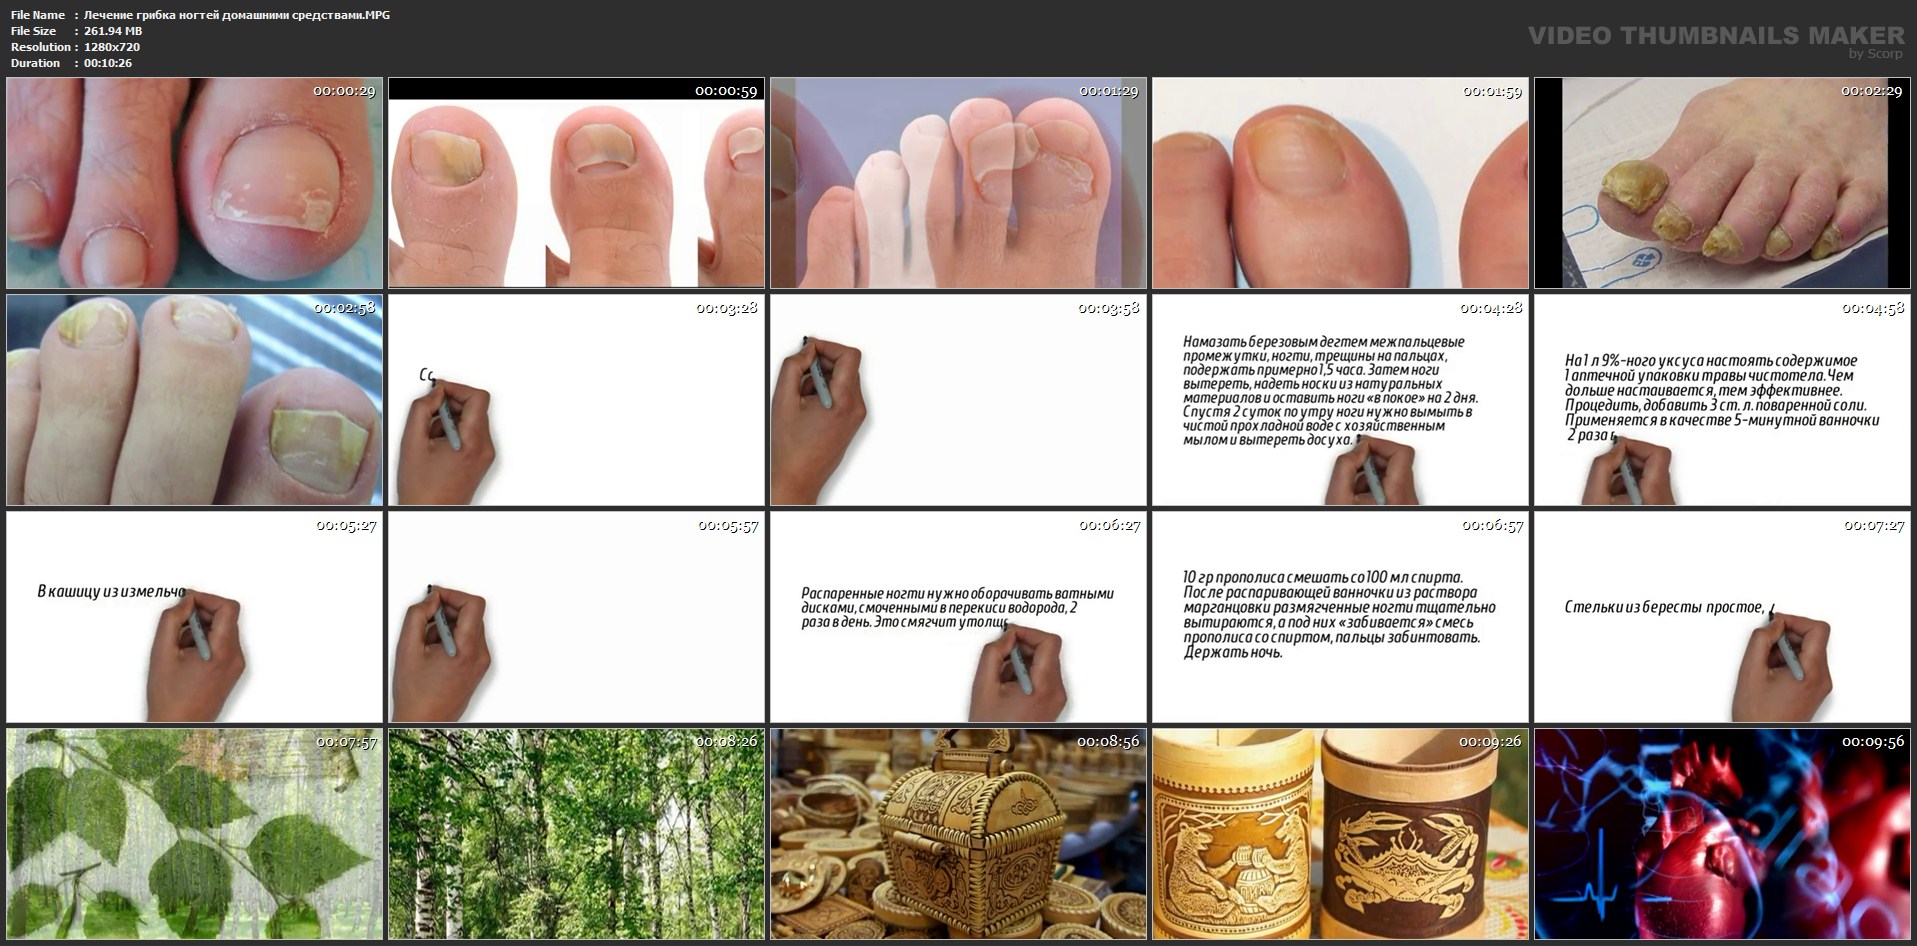 Как лечить грибок ногтей народными средствами